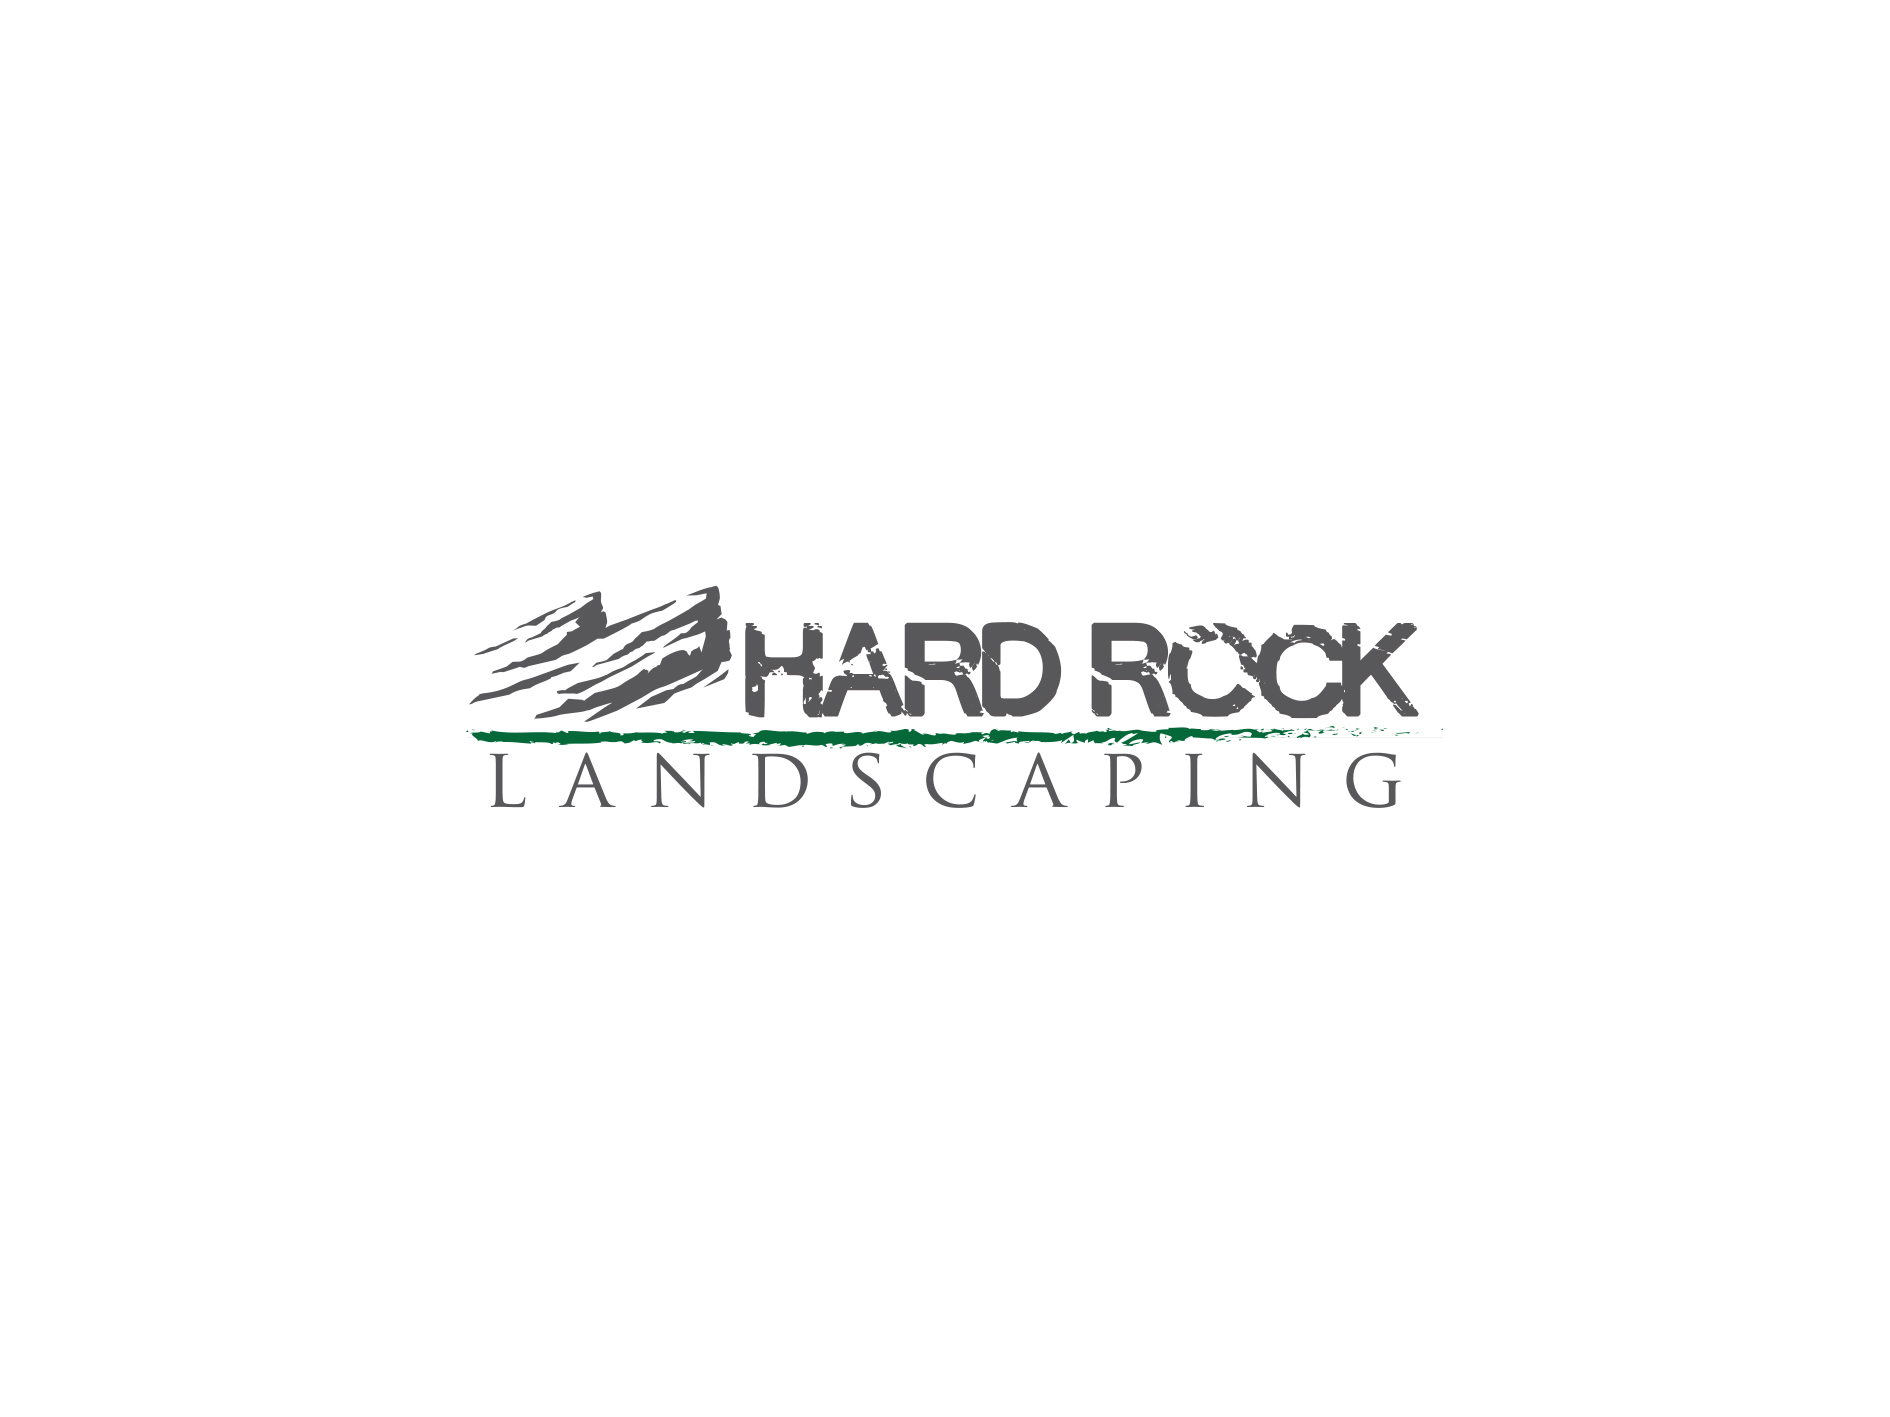 Hard Rock Landscaping Logo